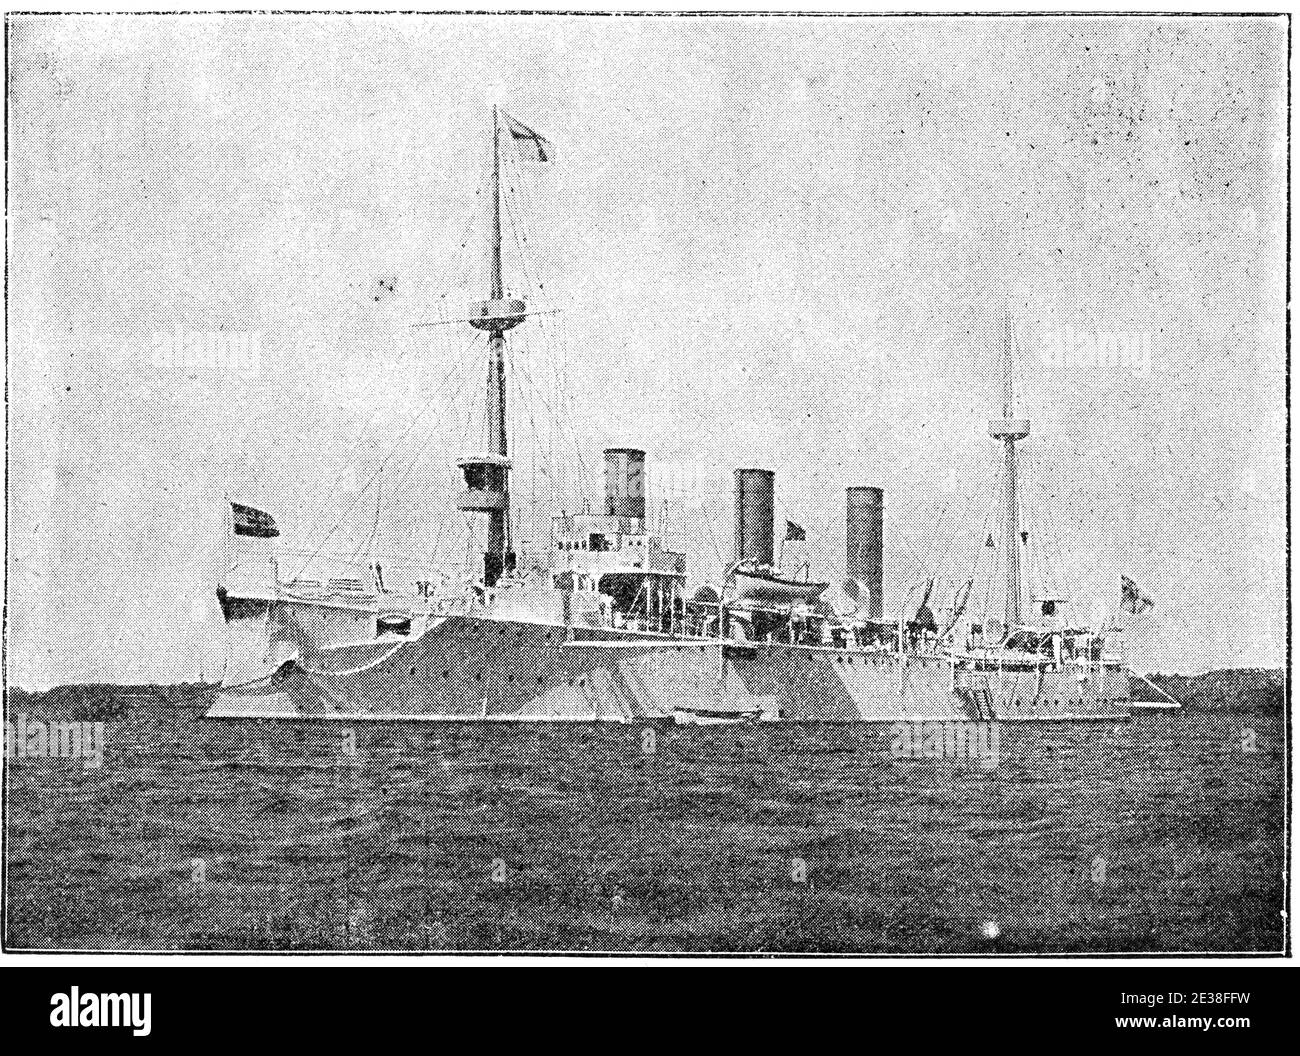 SMS Gefion (1893) - ein ungeschützter Kreuzer der Kaiserlichen Marine. Illustration des 19. Jahrhunderts. Deutschland. Weißer Hintergrund. Stockfoto